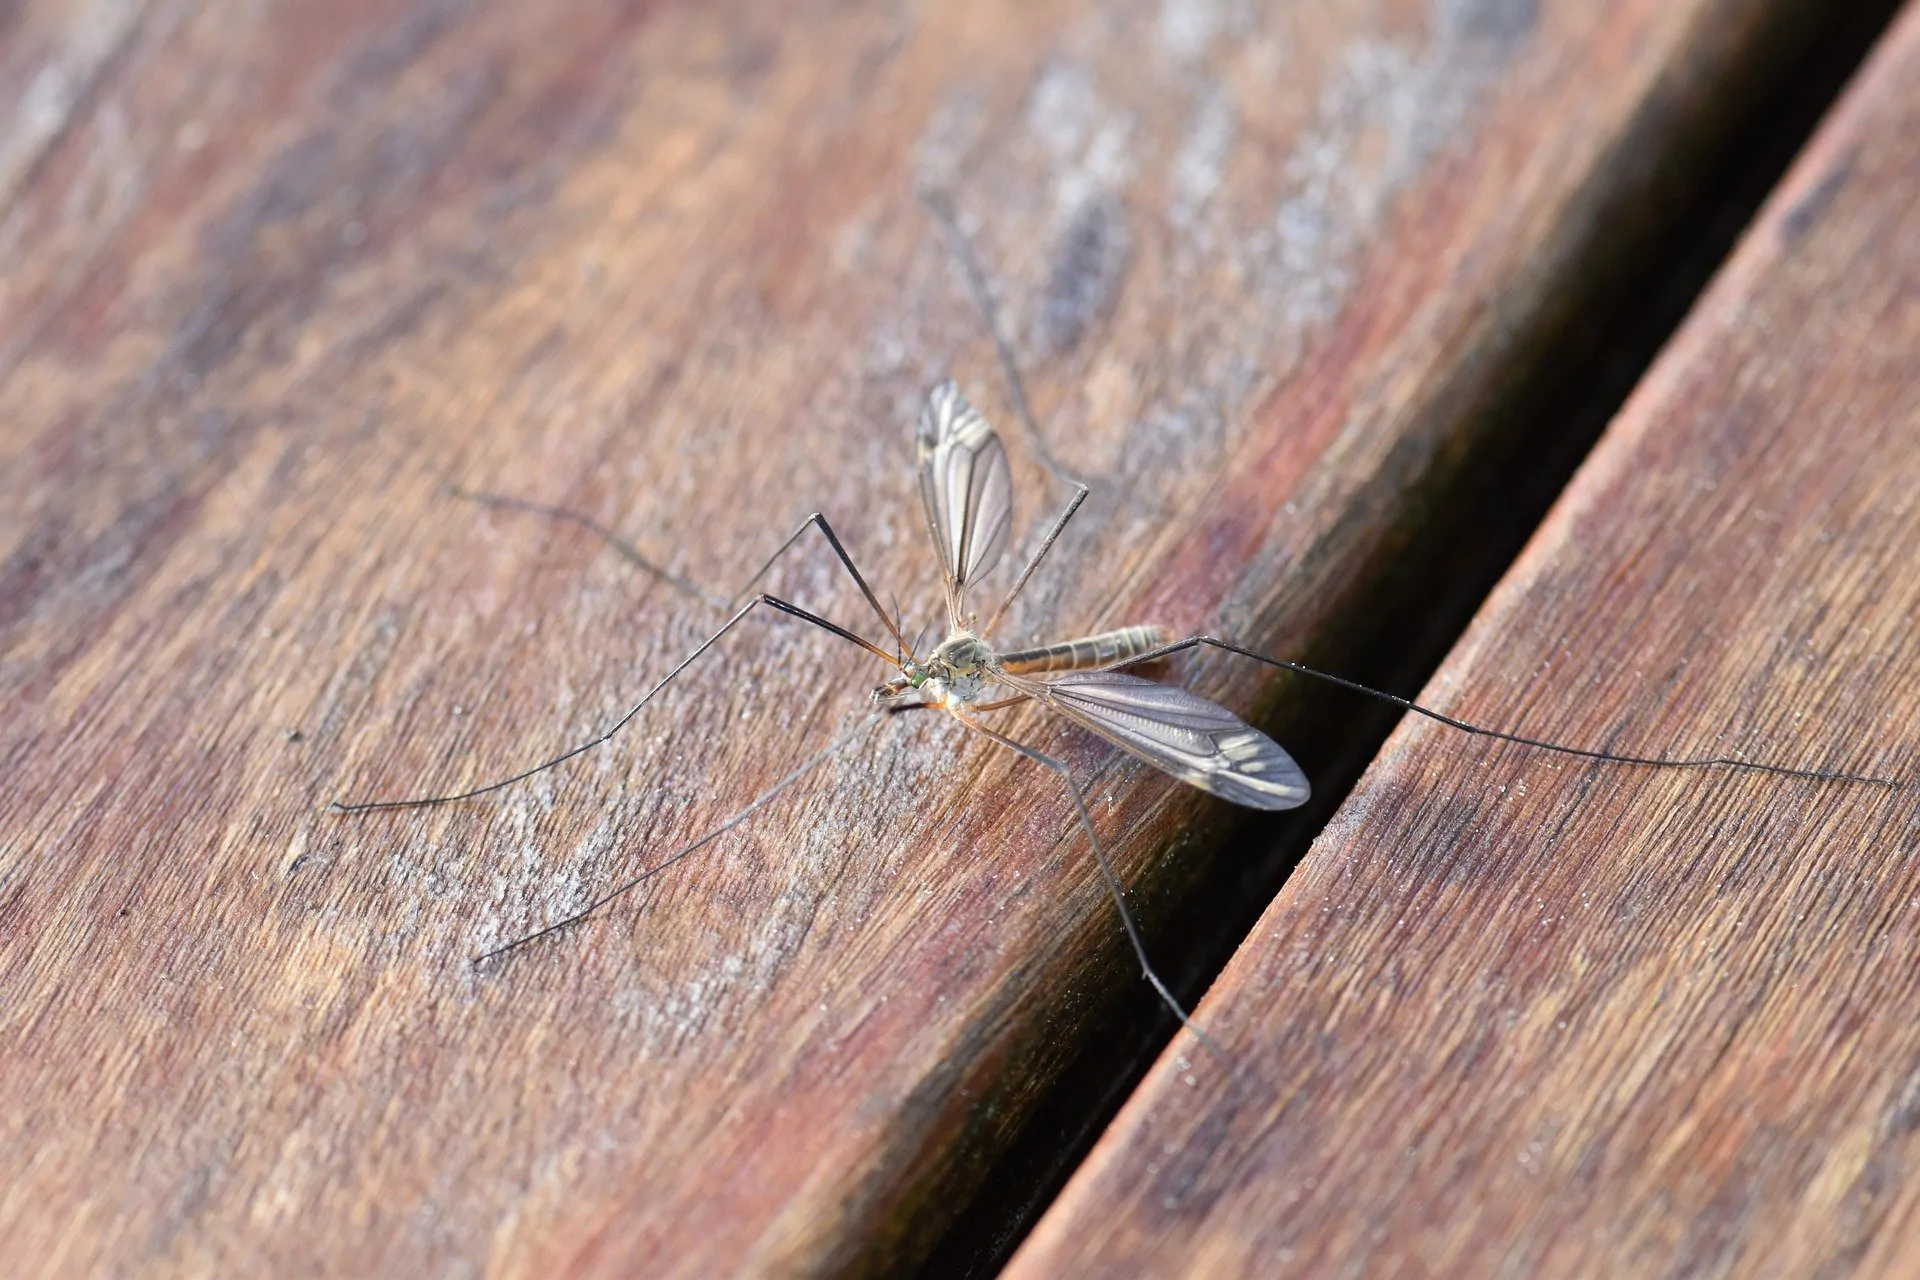 Zanzare in estate: rimedi naturali per sbarazzarsene definitivamente